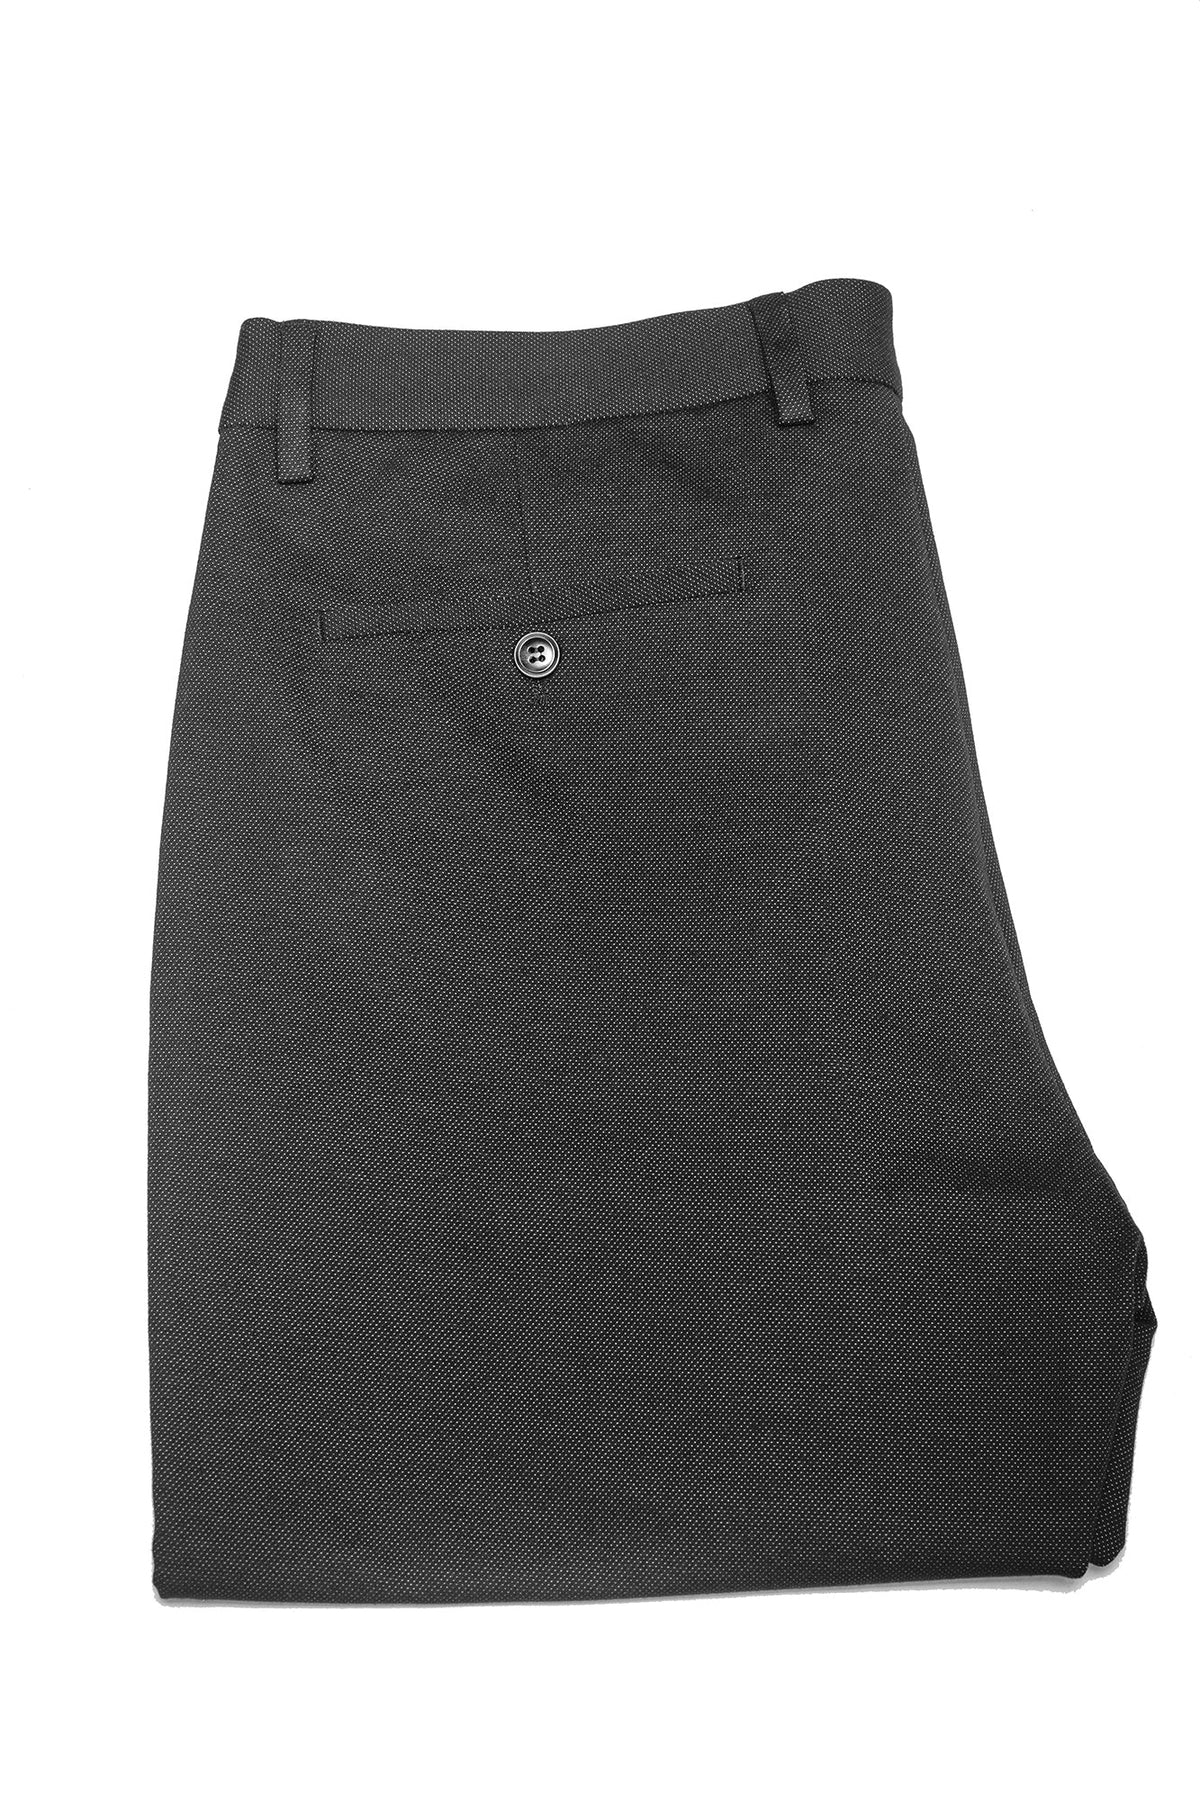 Pantalon pour homme par Au Noir | MAGNUM-RYAN black | Boutique Vvög, inventaire complet de la marque Au Noir